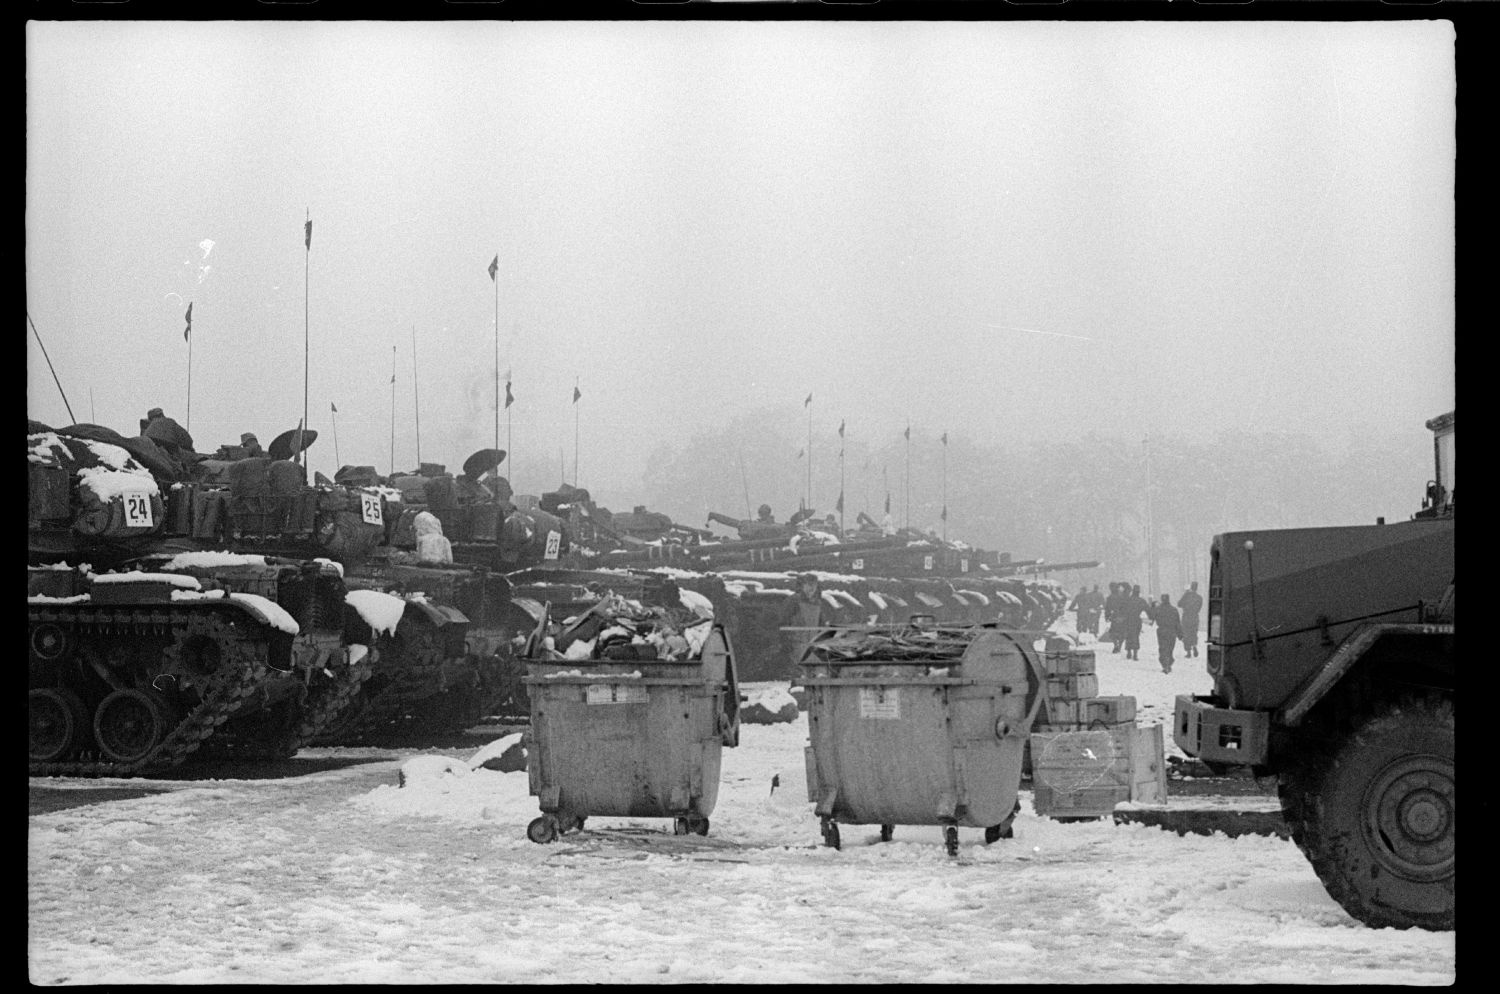 s/w-Fotografie: Truppenübung der U.S. Army Berlin Brigade in Bergen-Hohne in Niedersachsen (AlliiertenMuseum/U.S. Army Photograph Public Domain Mark)